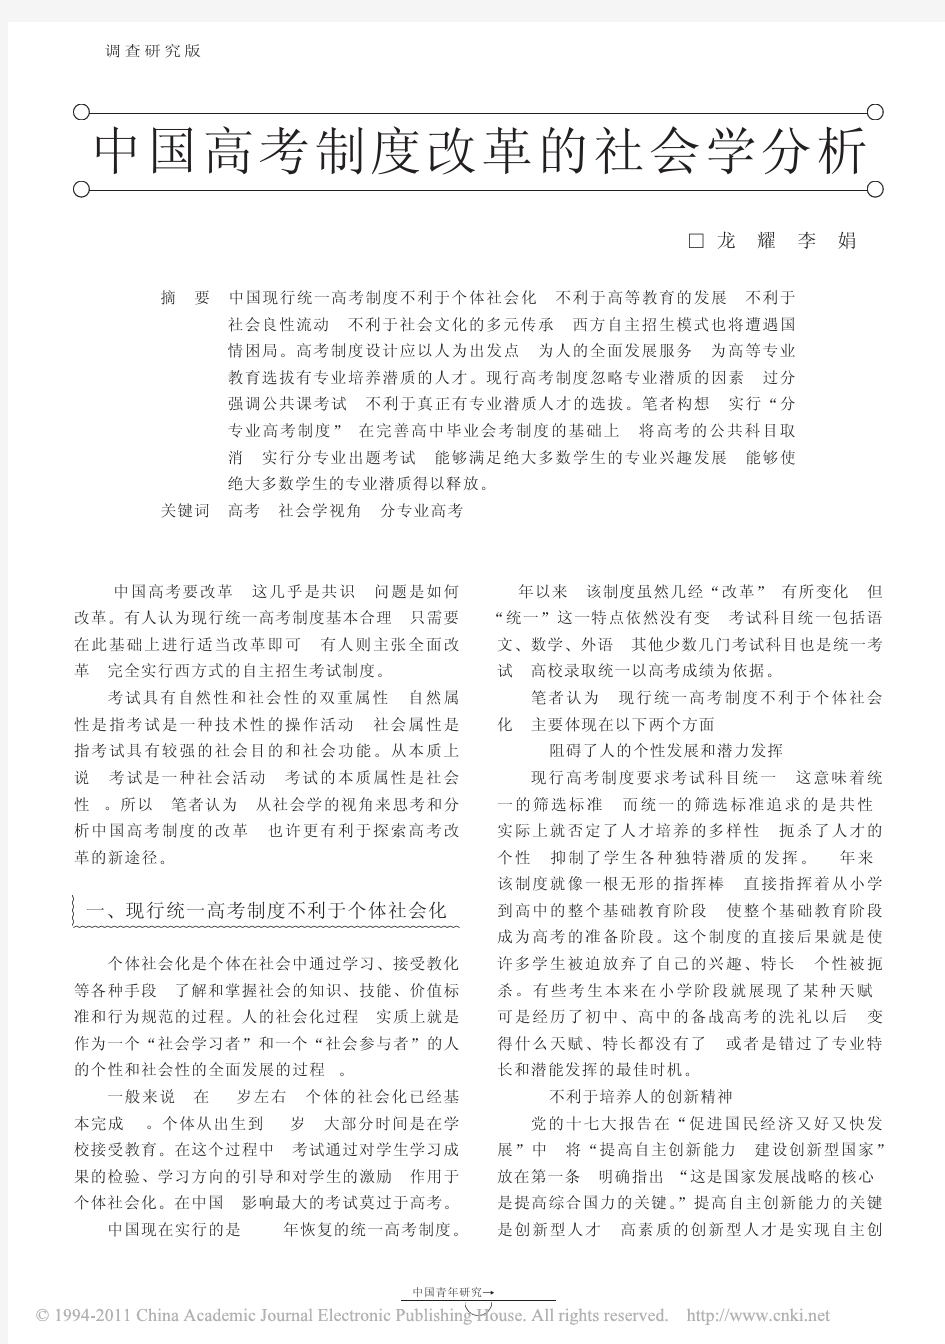 中国高考制度改革的社会学分析